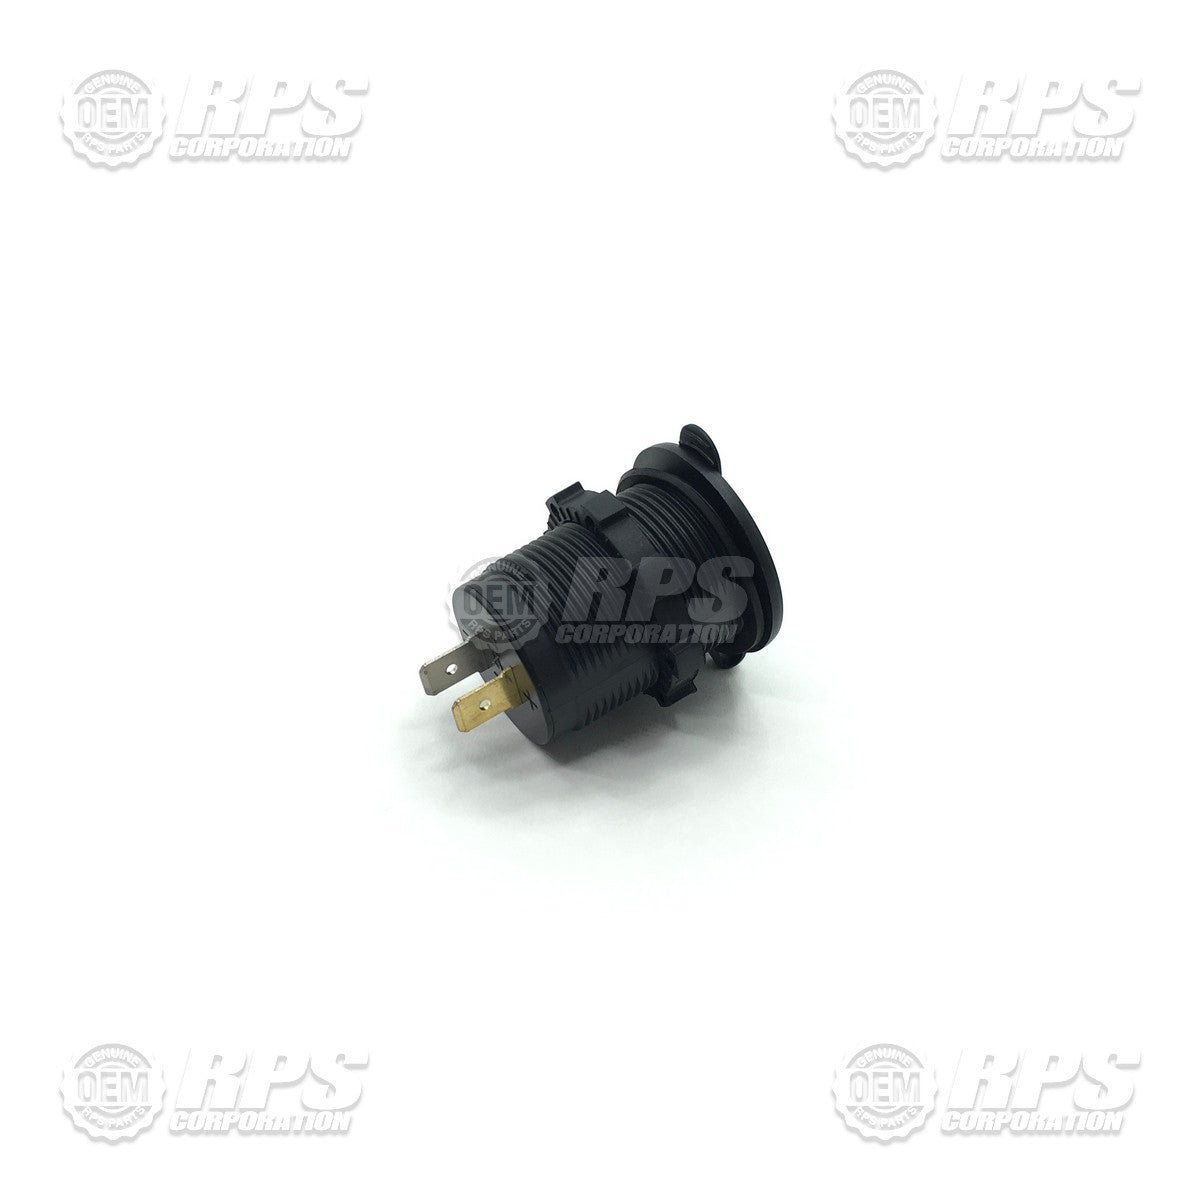 FactoryCat/Tomcat 700-2590, USB Socket Power Outlet, Black